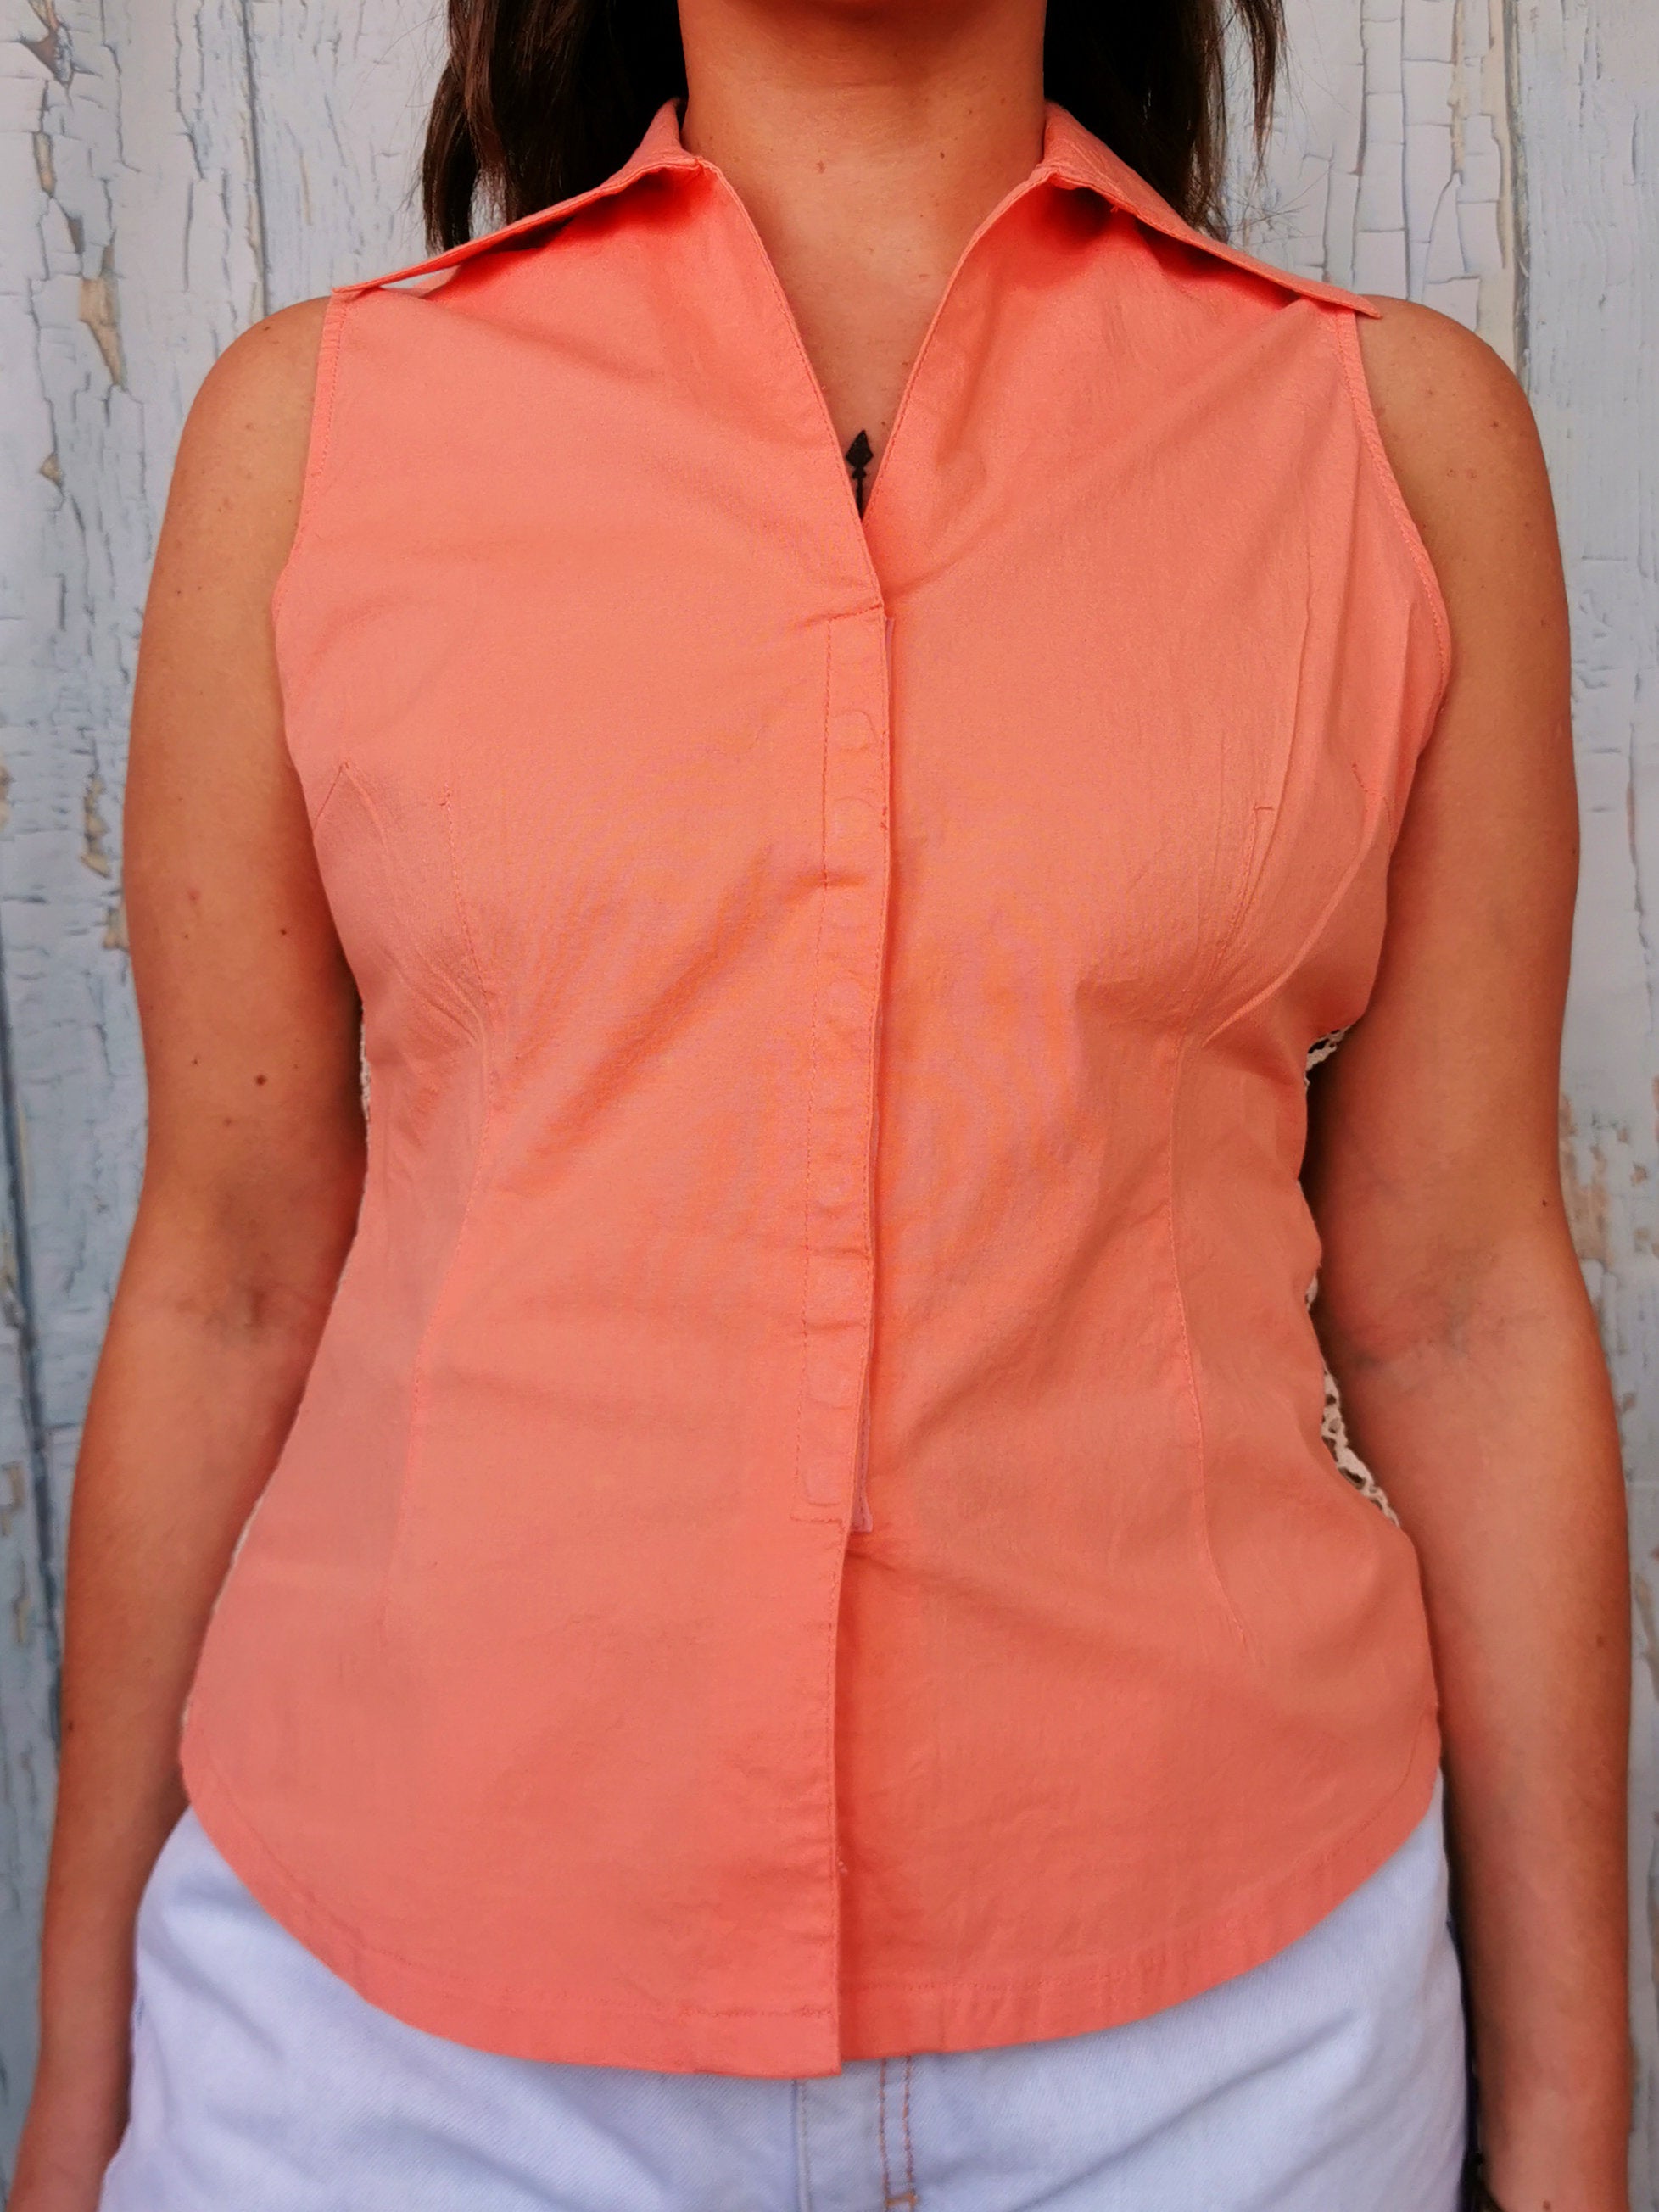 Vintage 80s minimalist peach pink pastel button blouse top